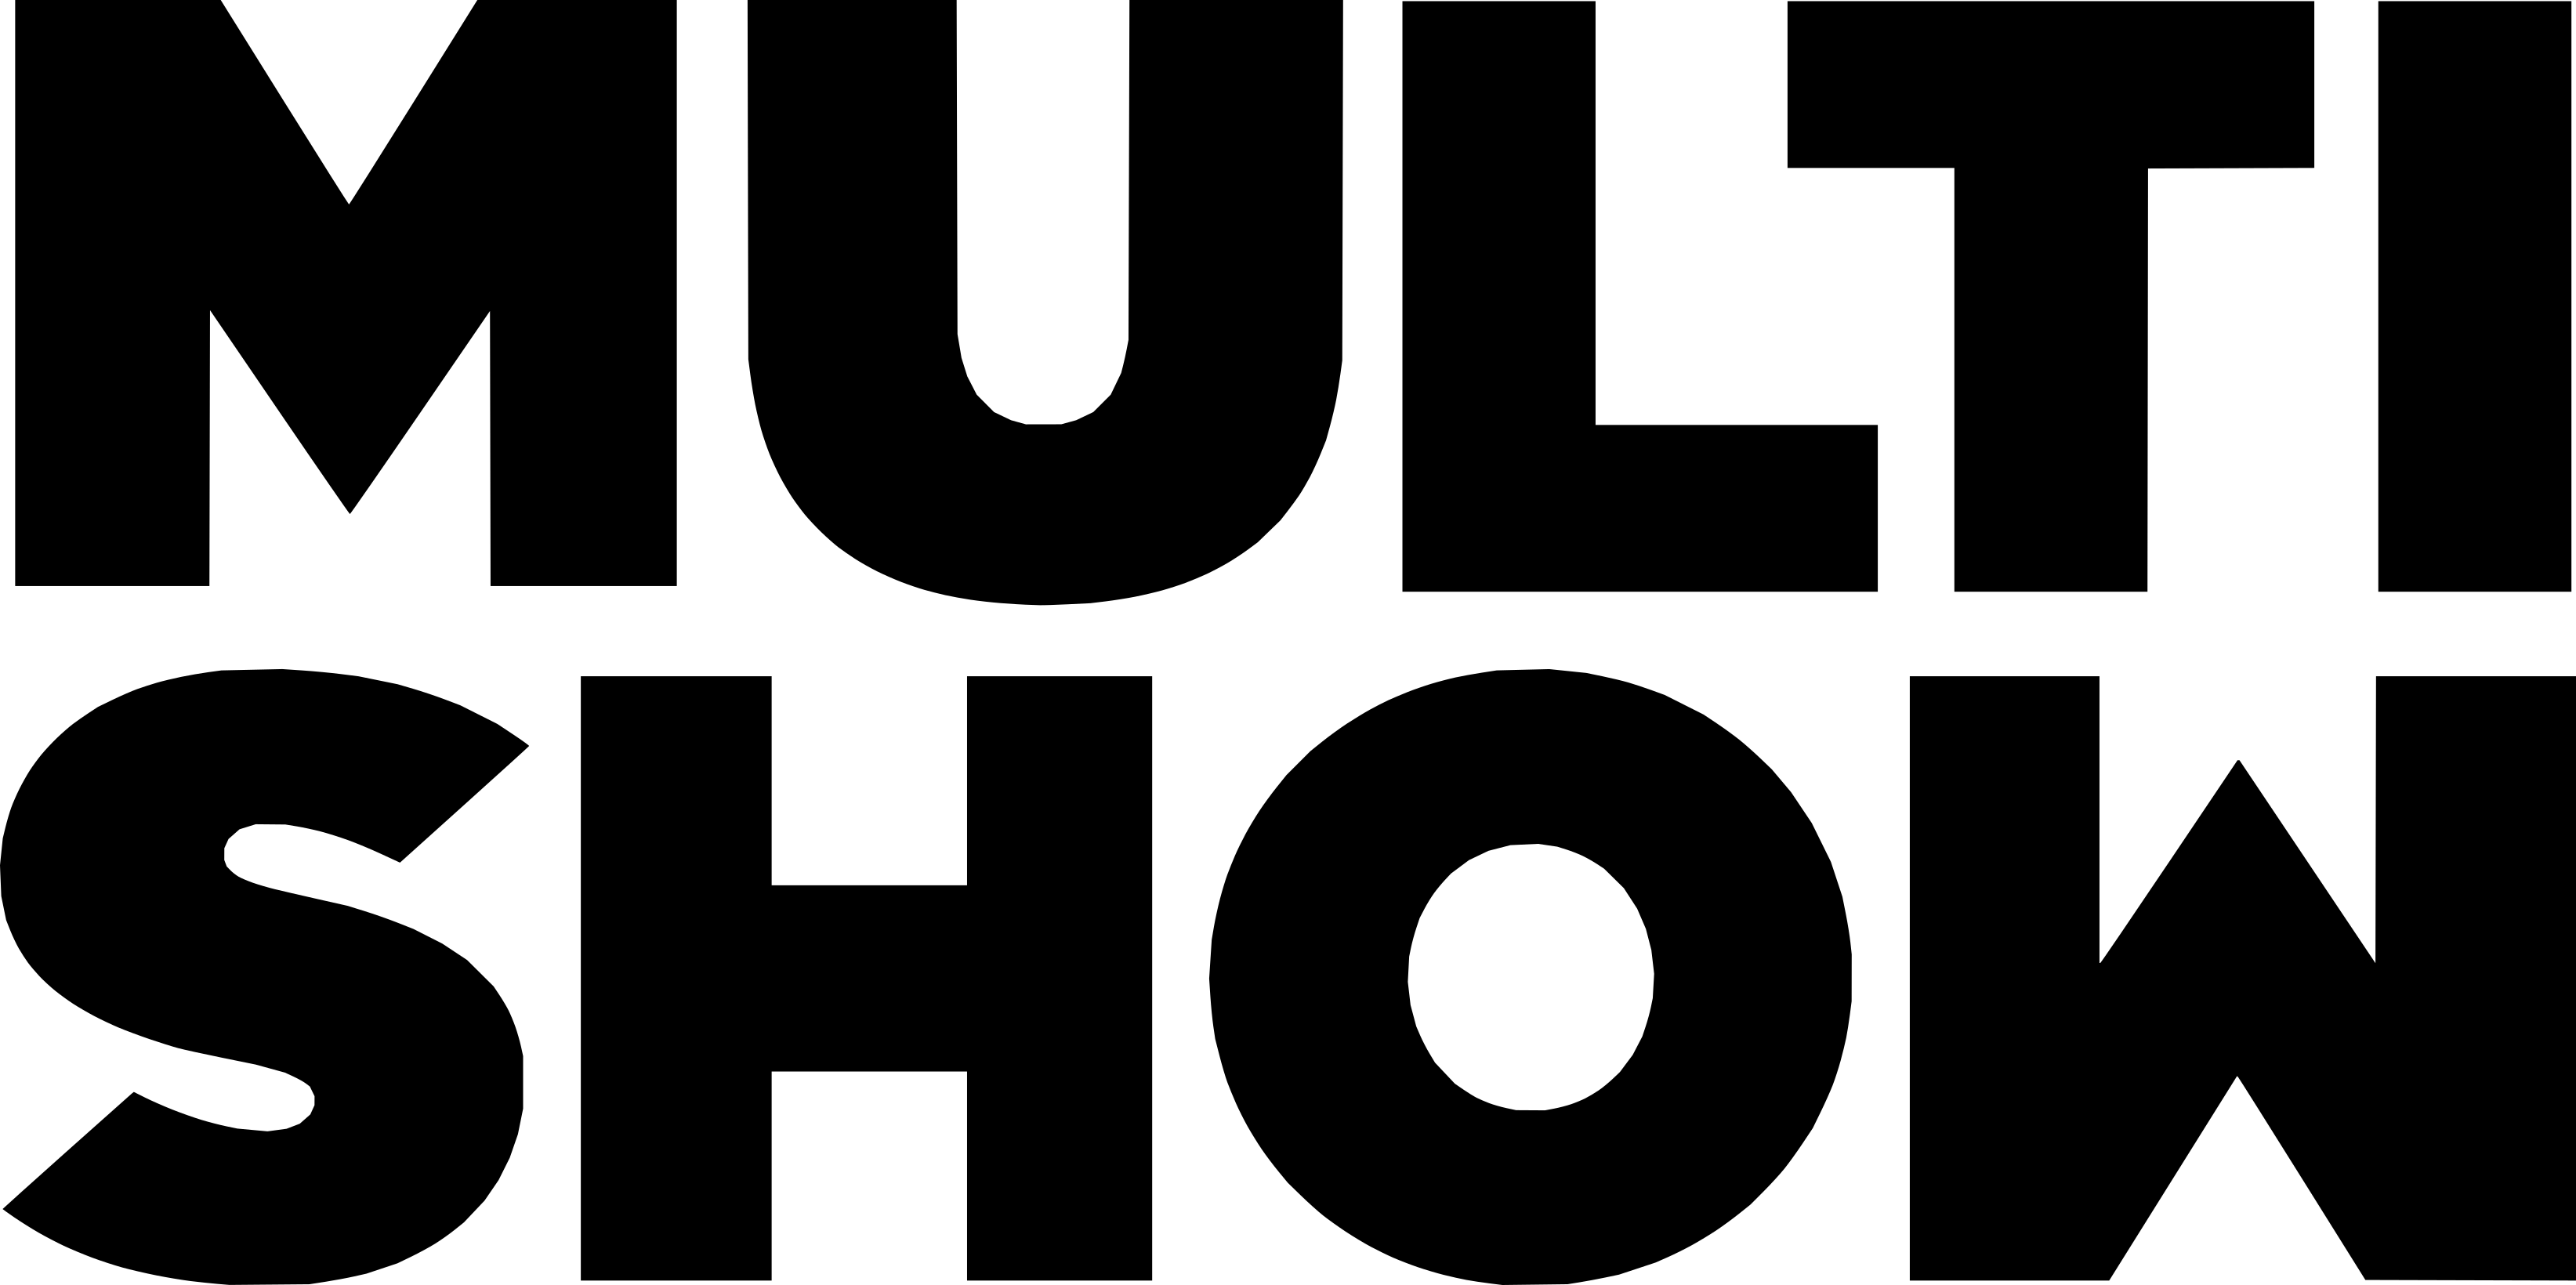 Multishow logo.